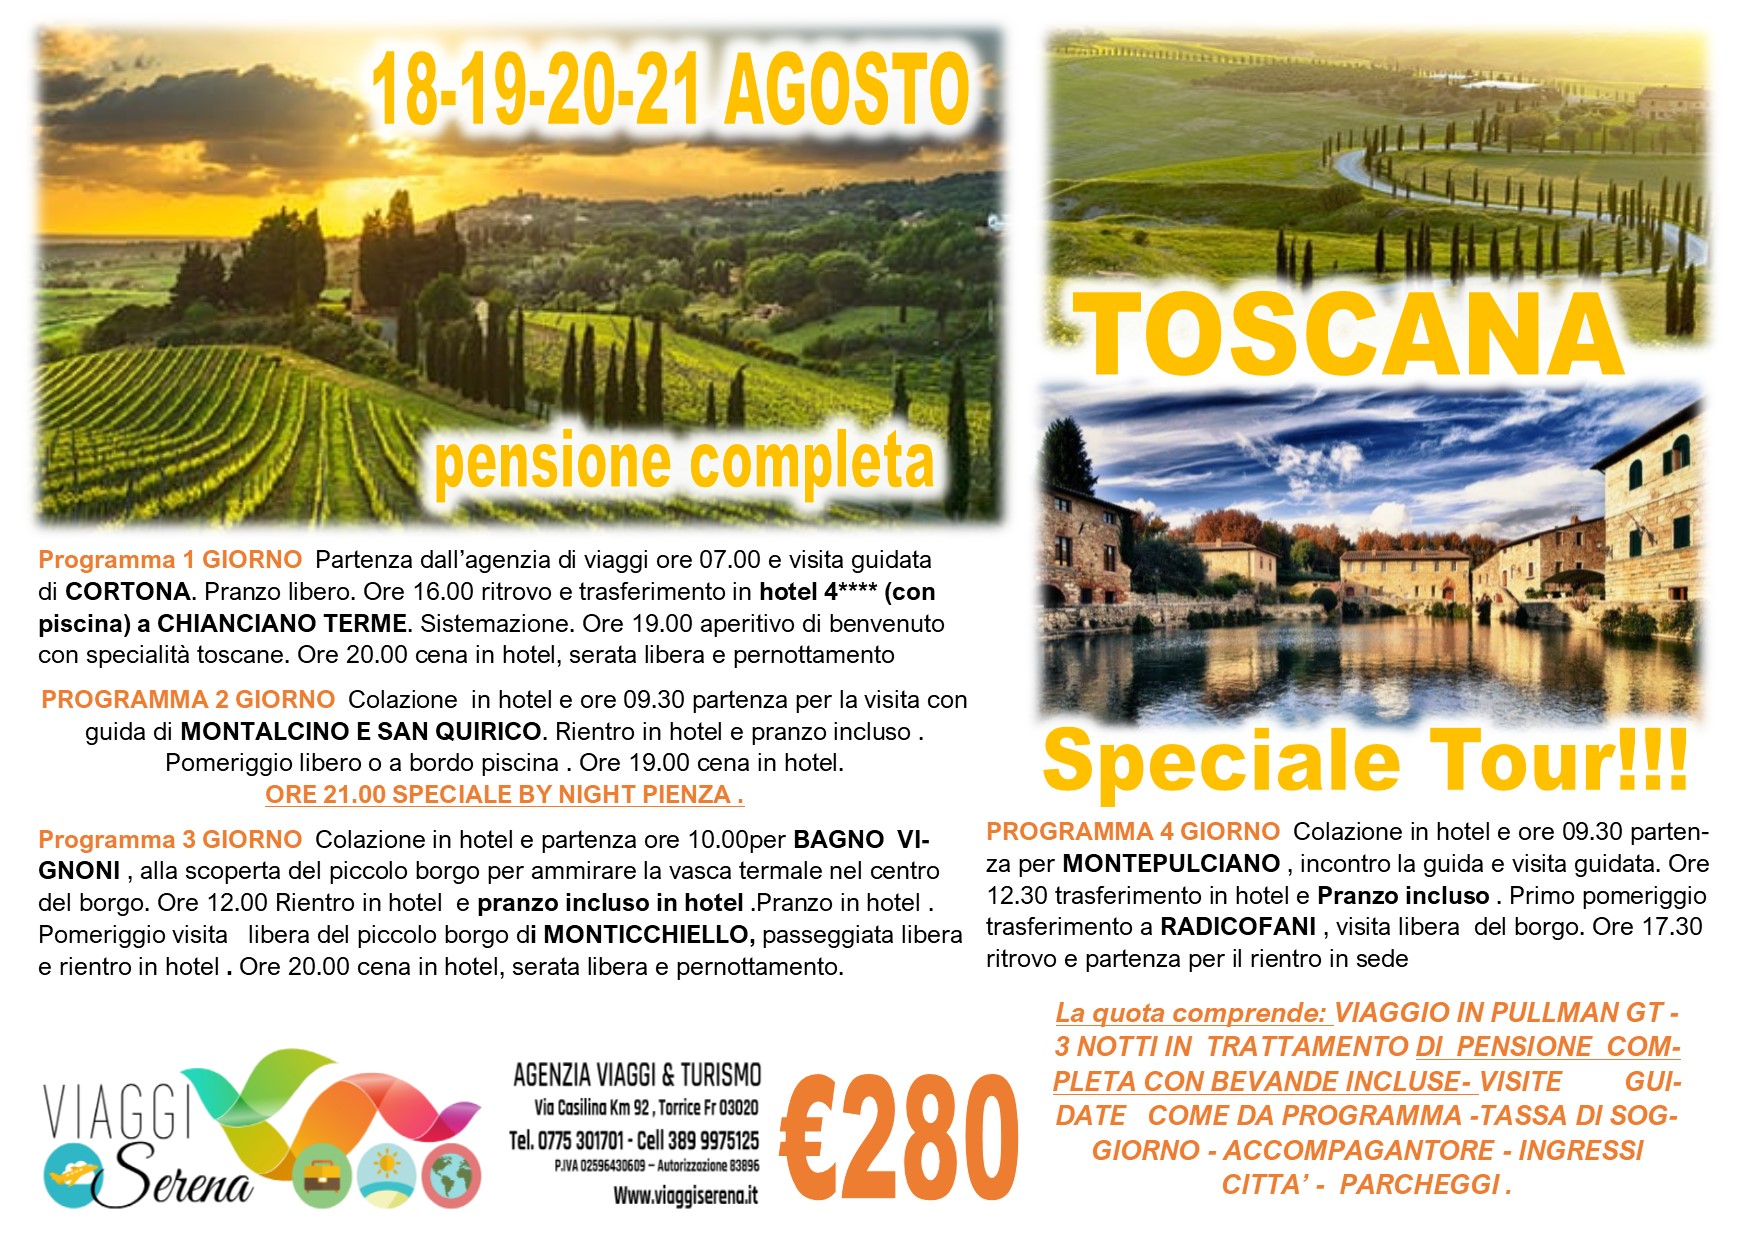 Viaggi di Gruppo: Speciale Toscana Cortona, Montalcino, San Quirico, Bagno Vignoni & Pienza 18-19-20-21 Agosto €280,00